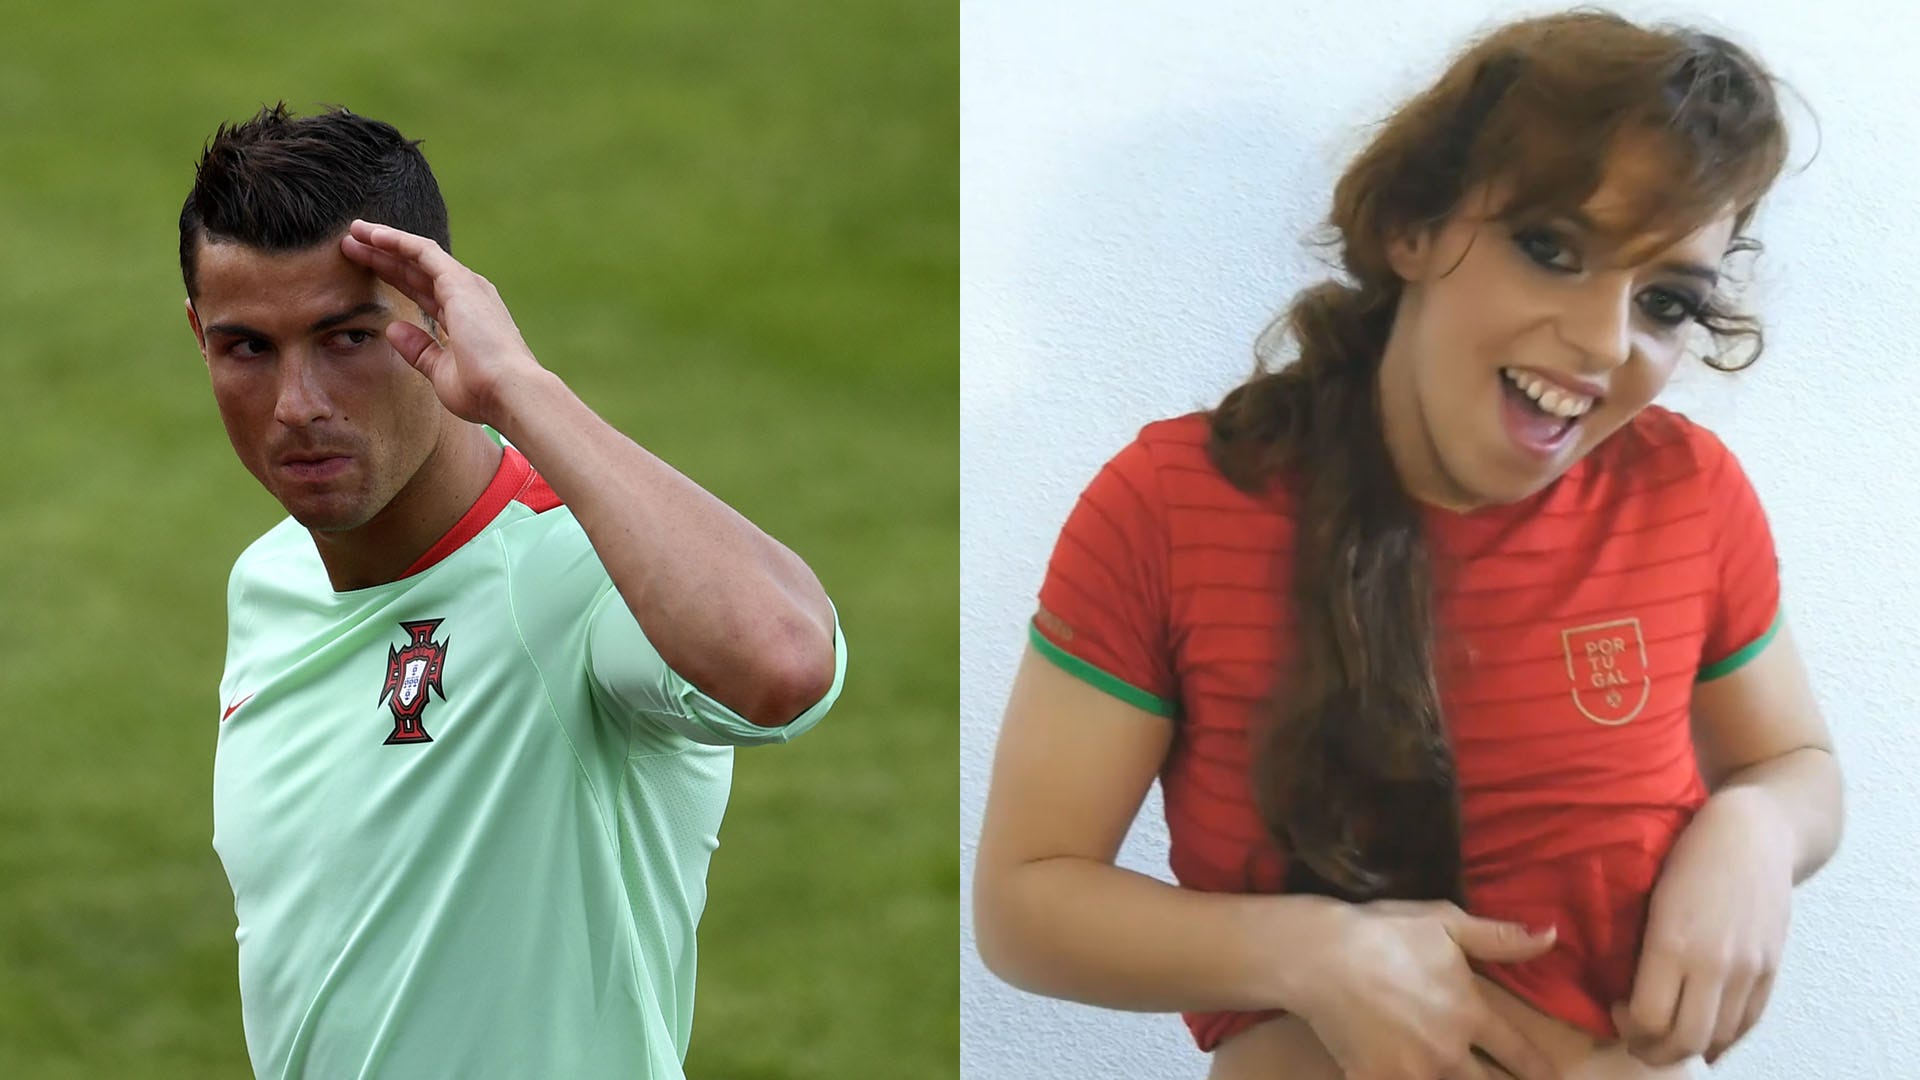 Ronaldo Xxx Wife - Cristiano Ronaldo inspires Euro 2016 porn movie | Goal.com English Oman